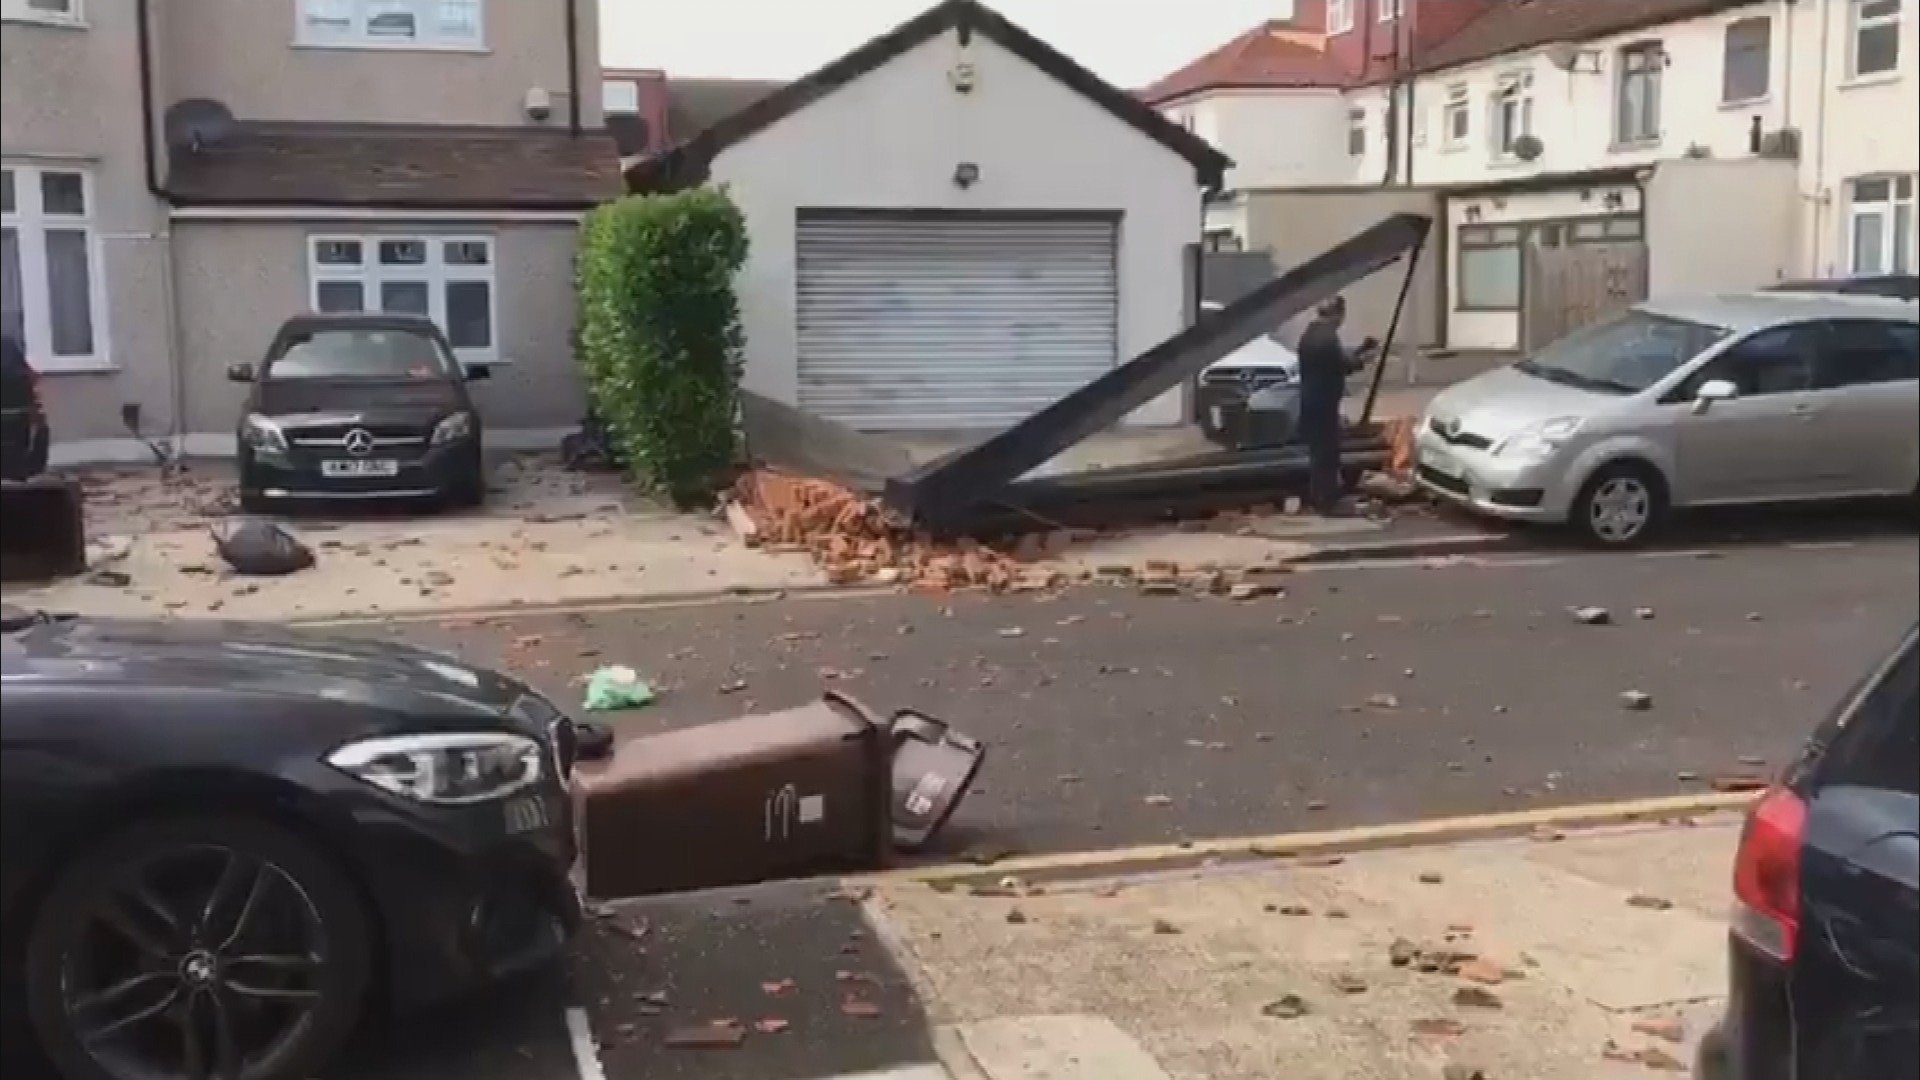 Homes damaged as 'tornado' hits east London; ITV News